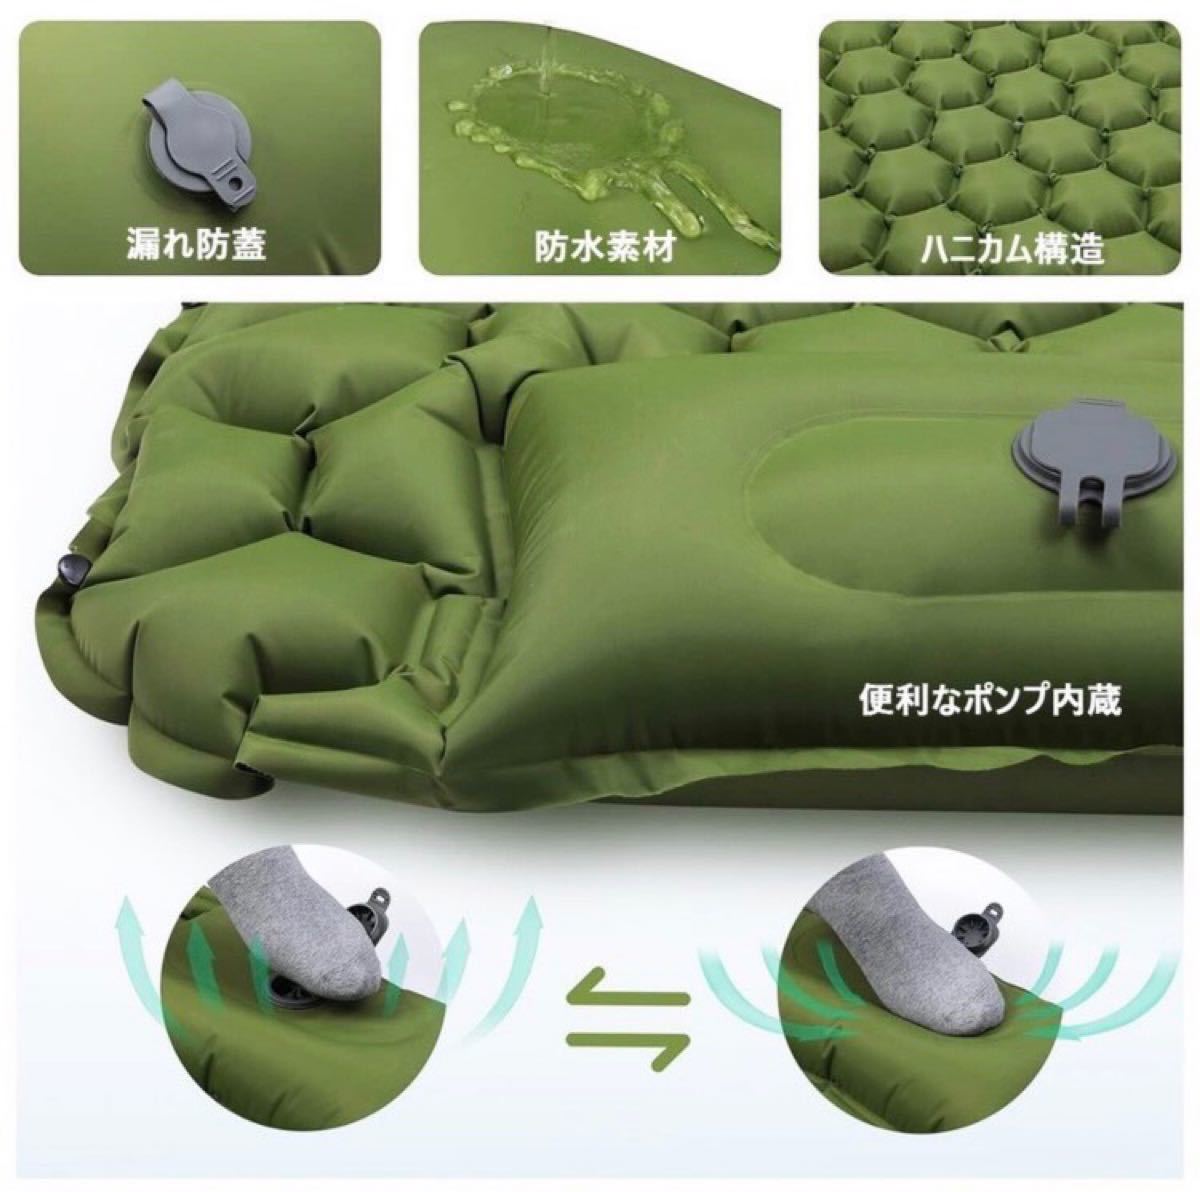 最新版 超軽量 エアーマット エアーベッド キャンプマット テントマット キャンピングマット アウトドア 寝袋ポンプ付き 枕付き 